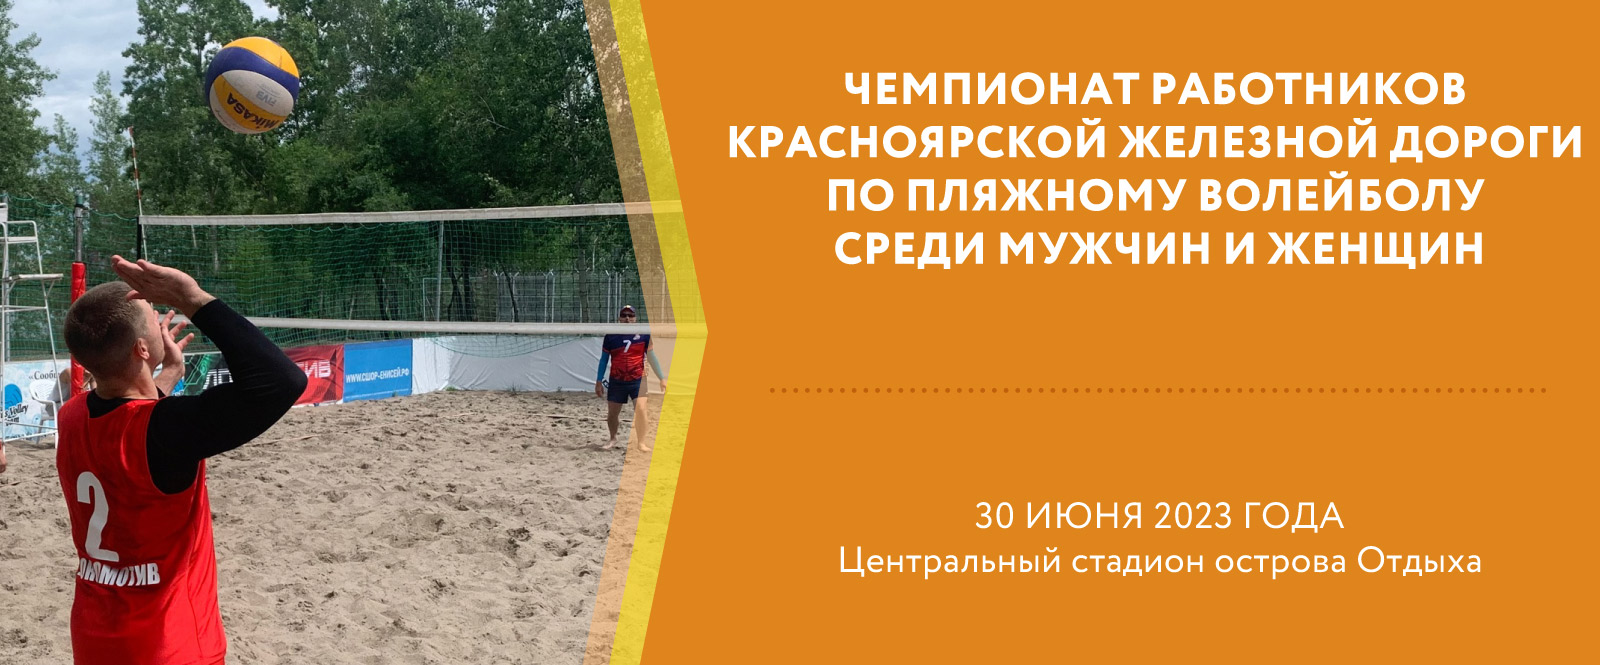 Чемпионат работников Красноярской железной дороги по пляжному волейболу среди мужчин и женщин